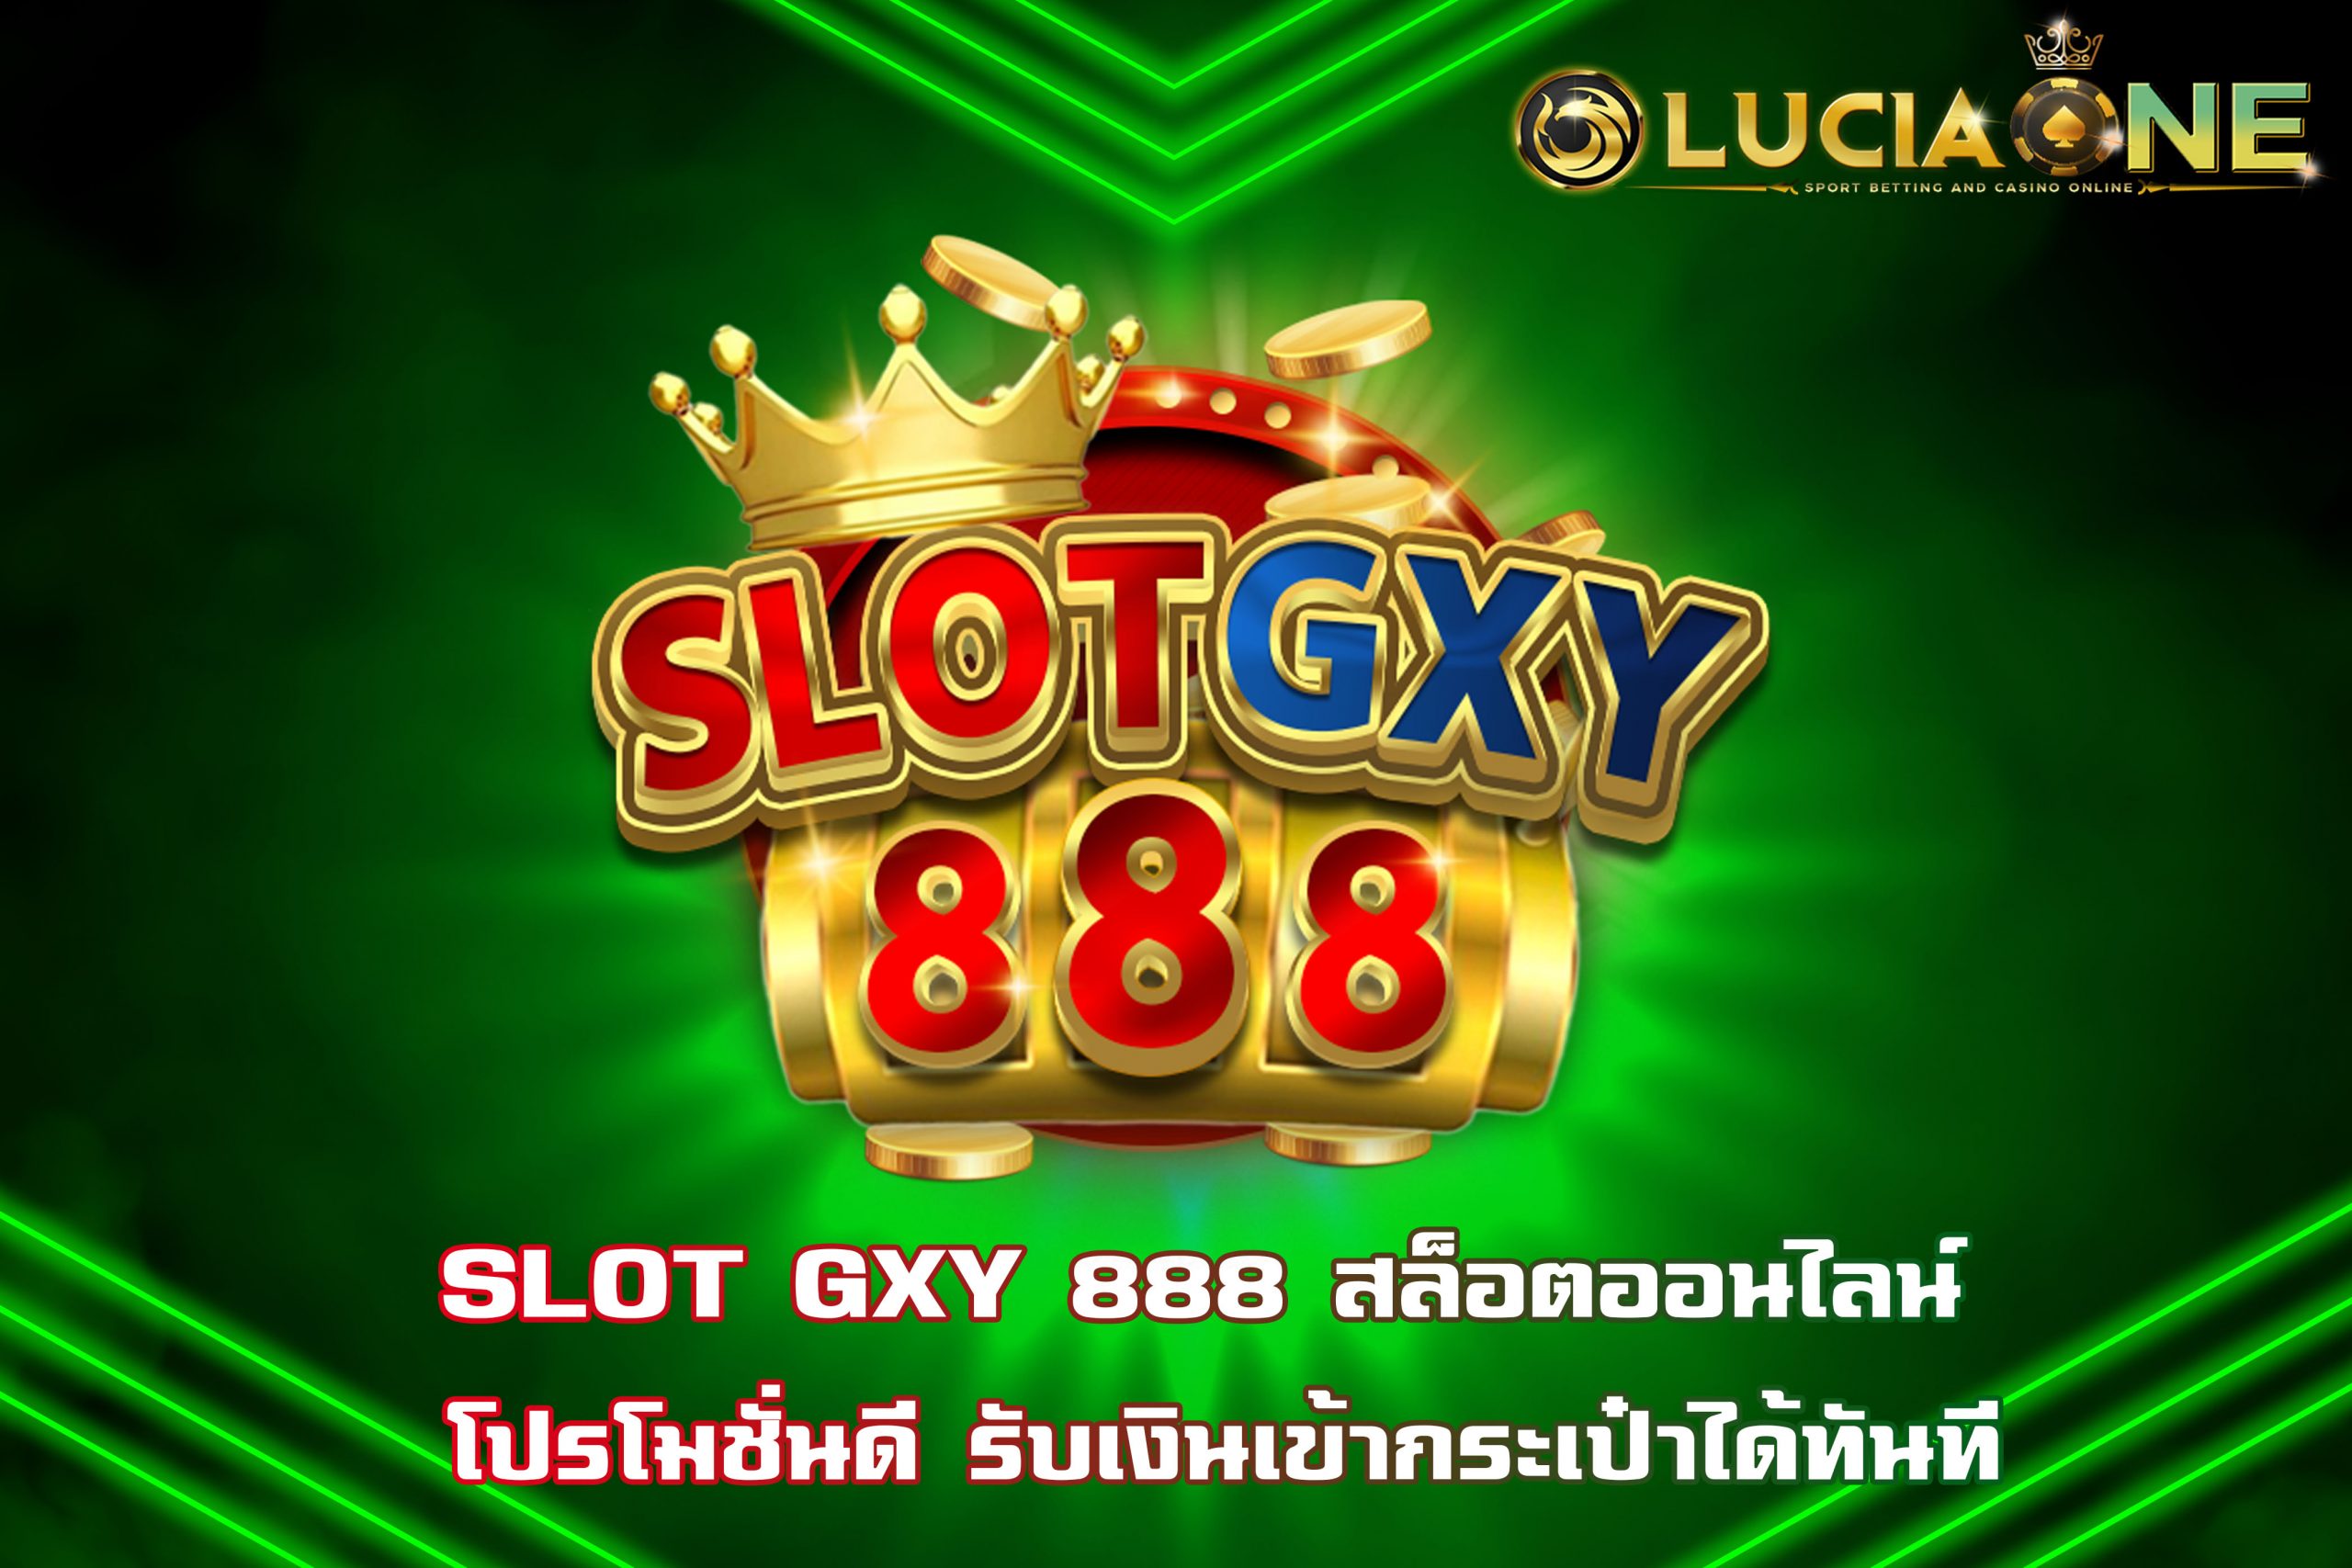 SLOT GXY 888